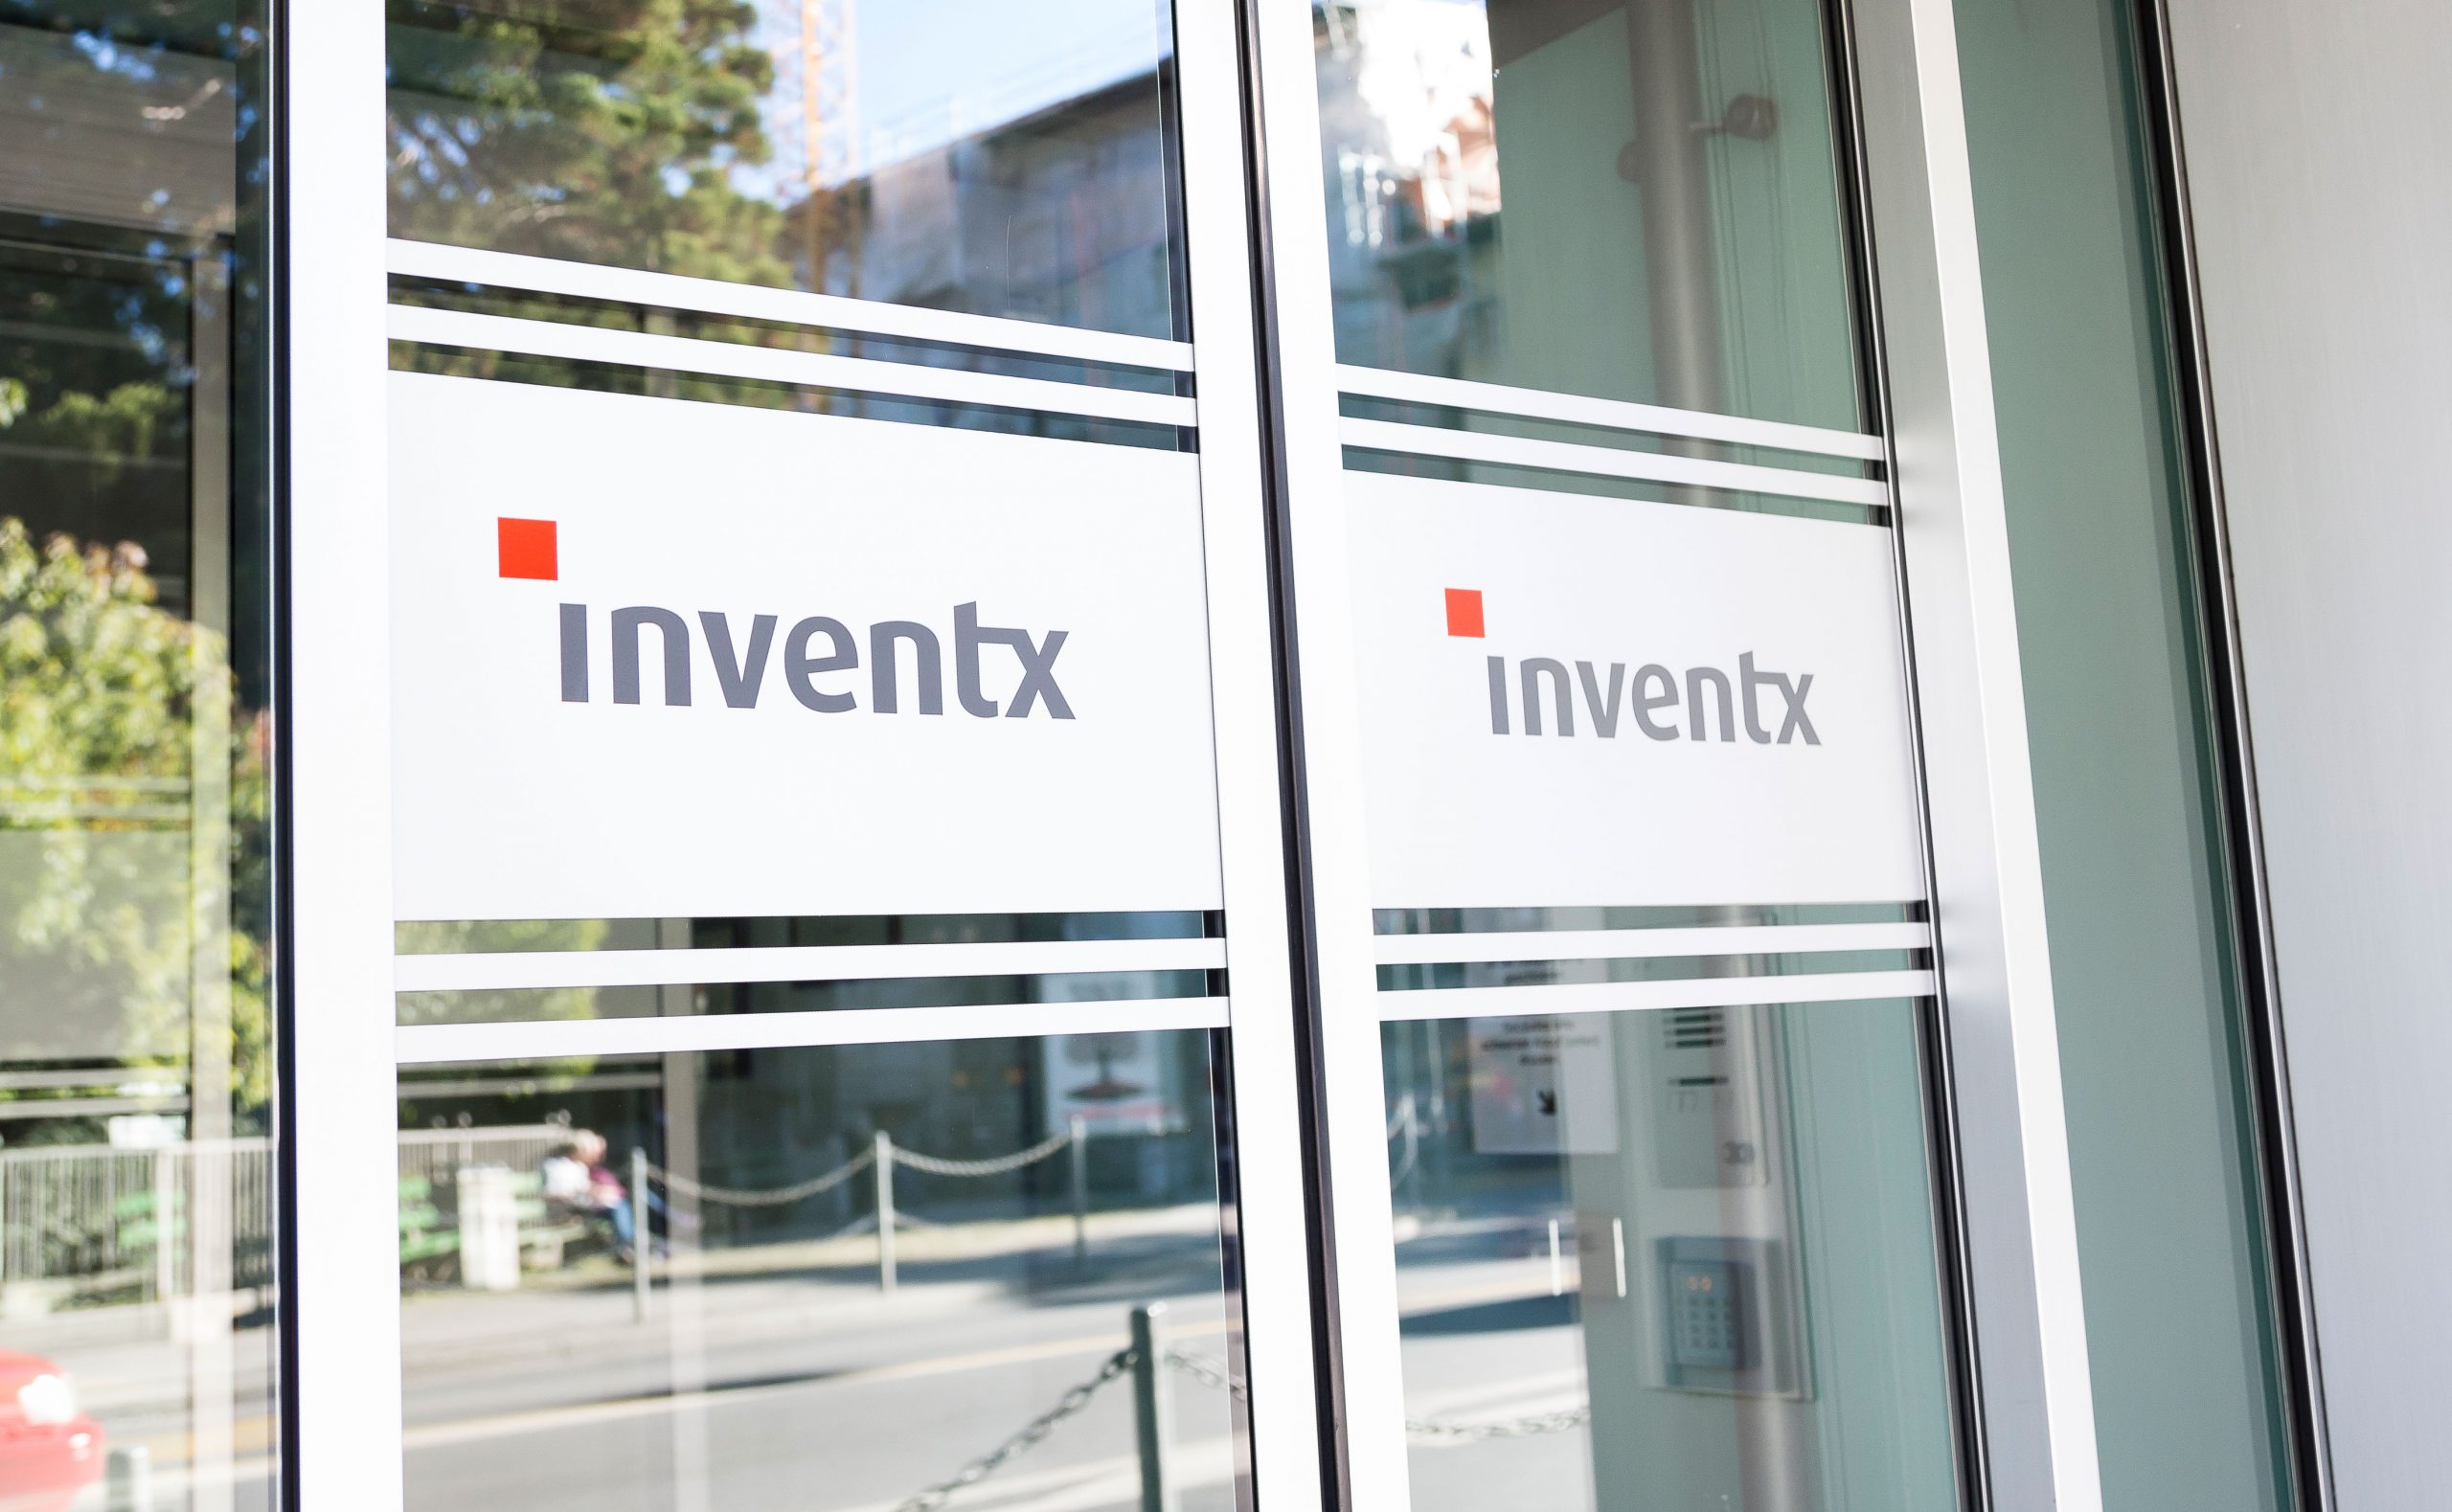 Fünf Kantonalbanken wechseln auf  Inventx-Plattform